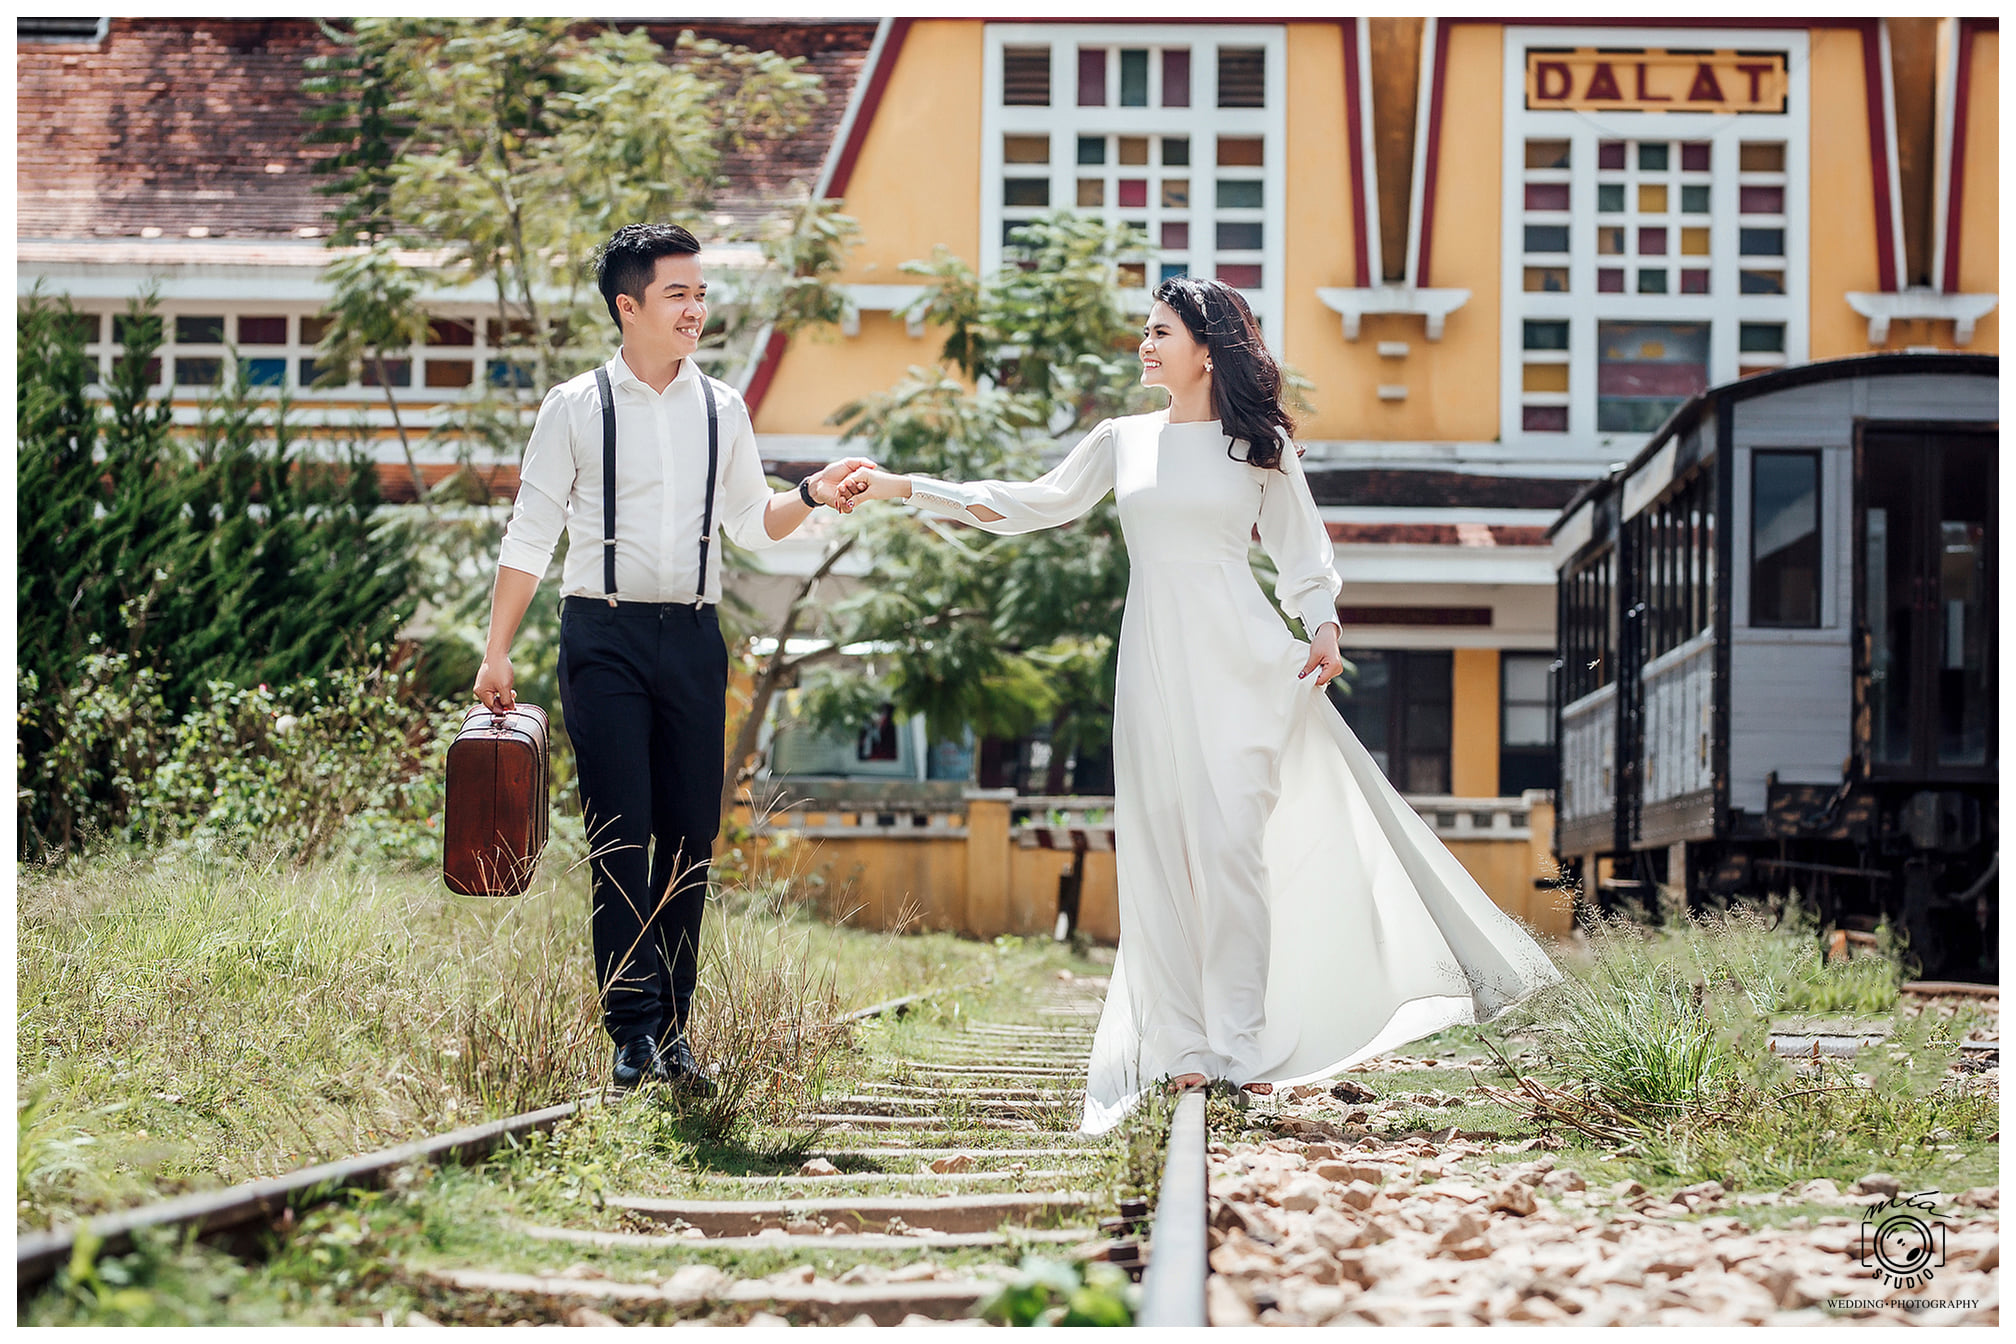 Xếp hạng 10 Studio chụp ảnh cưới đẹp nhất Đà Lạt - Mía Studio